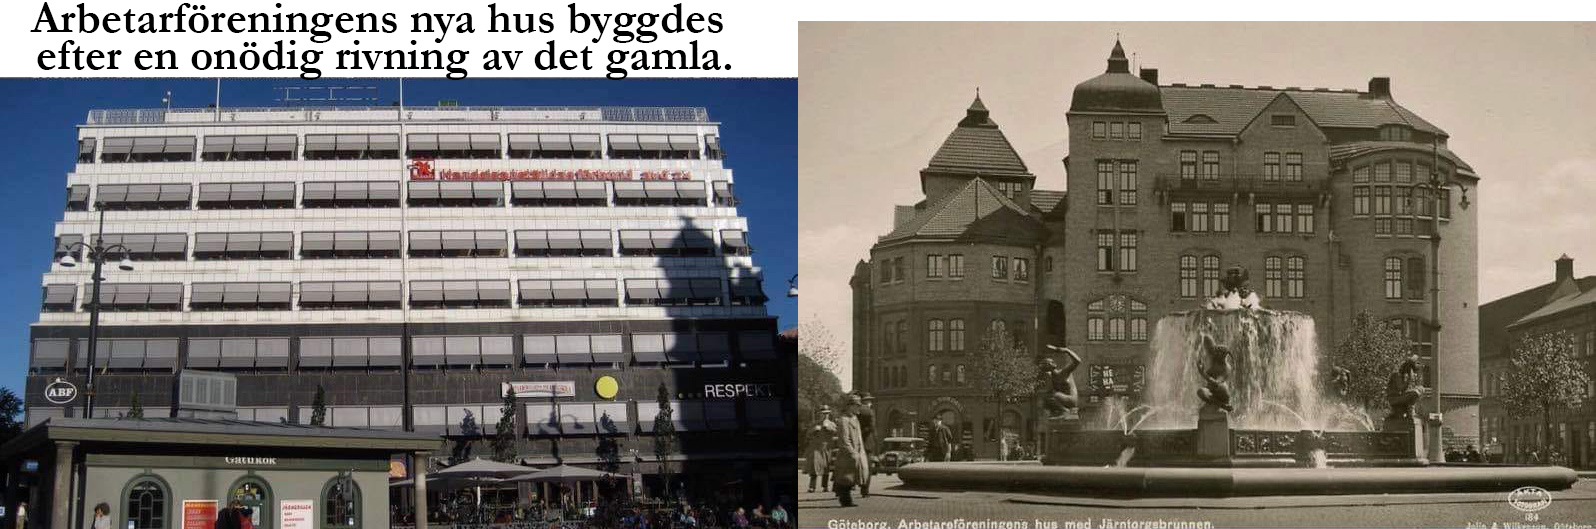 Arbetarföreningens nya hus vid Järntorget är en av Göteborgs fulaste byggnader. Till höger syns den gamla byggnaden som revs.